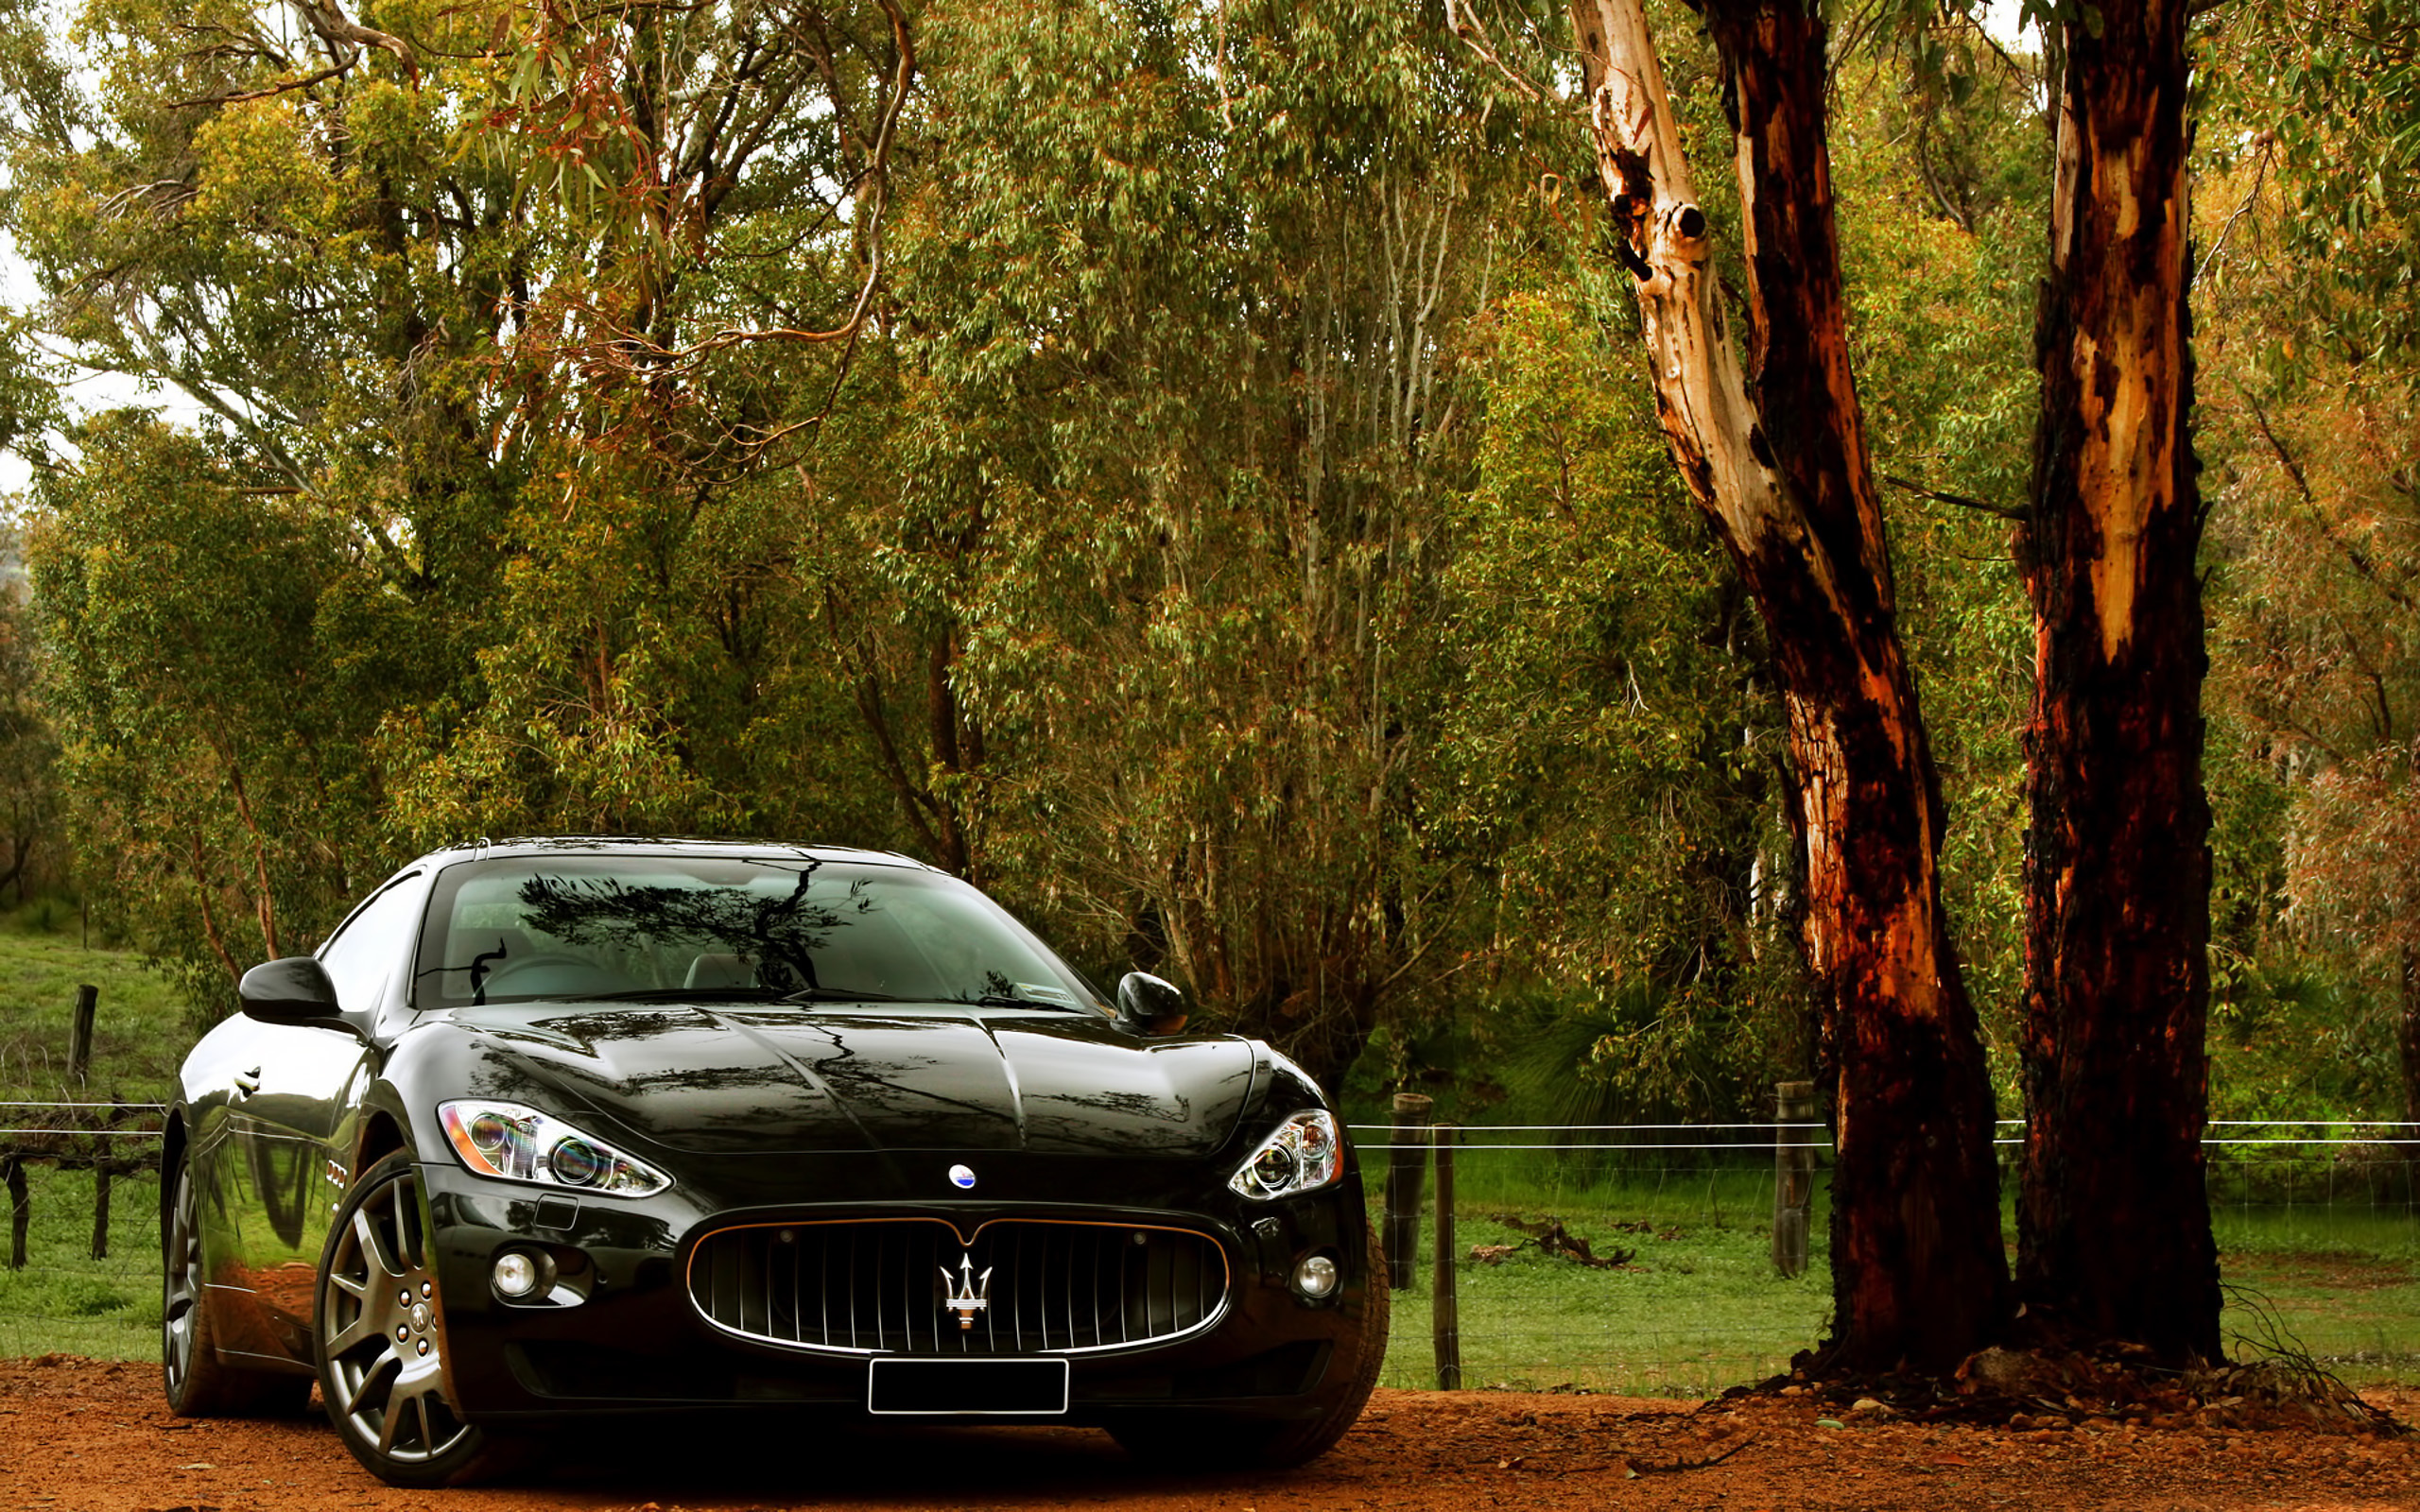 Скачать картинку Мазератти (Maserati), Машины, Транспорт в телефон бесплатно.